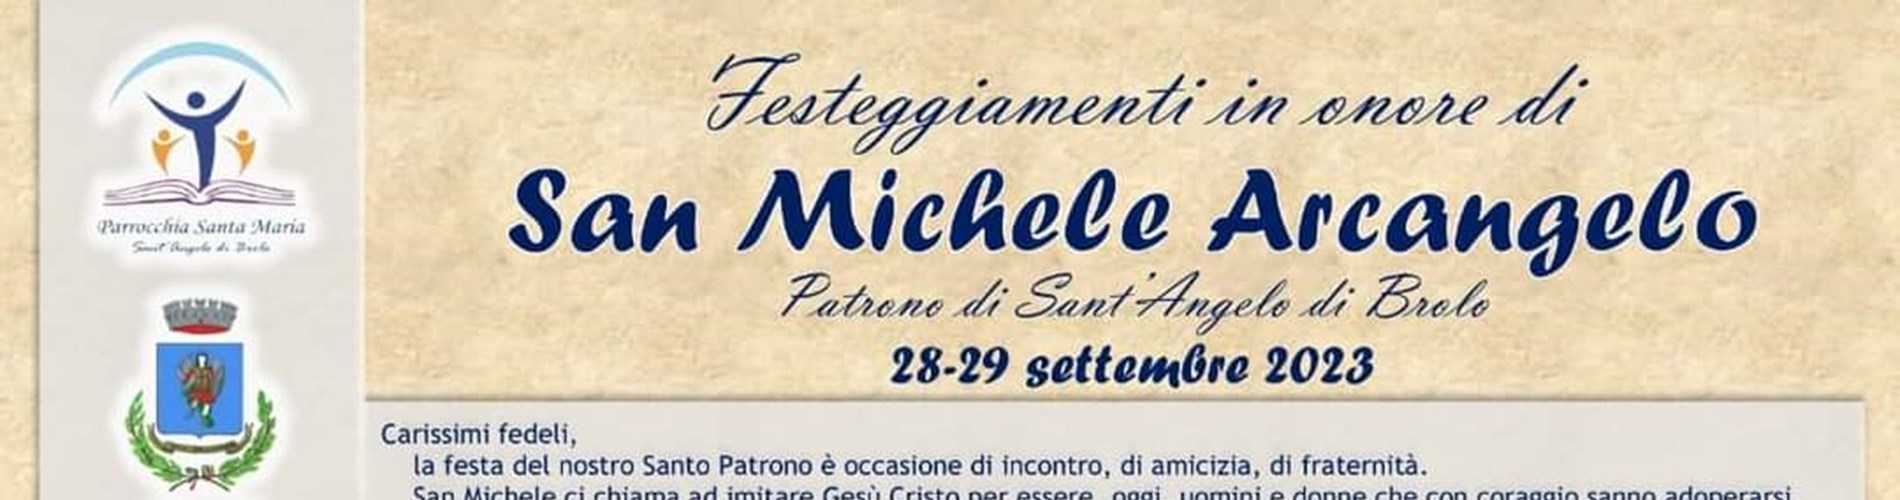 Festeggiamenti in onore di San Michele Arcangelo 2023